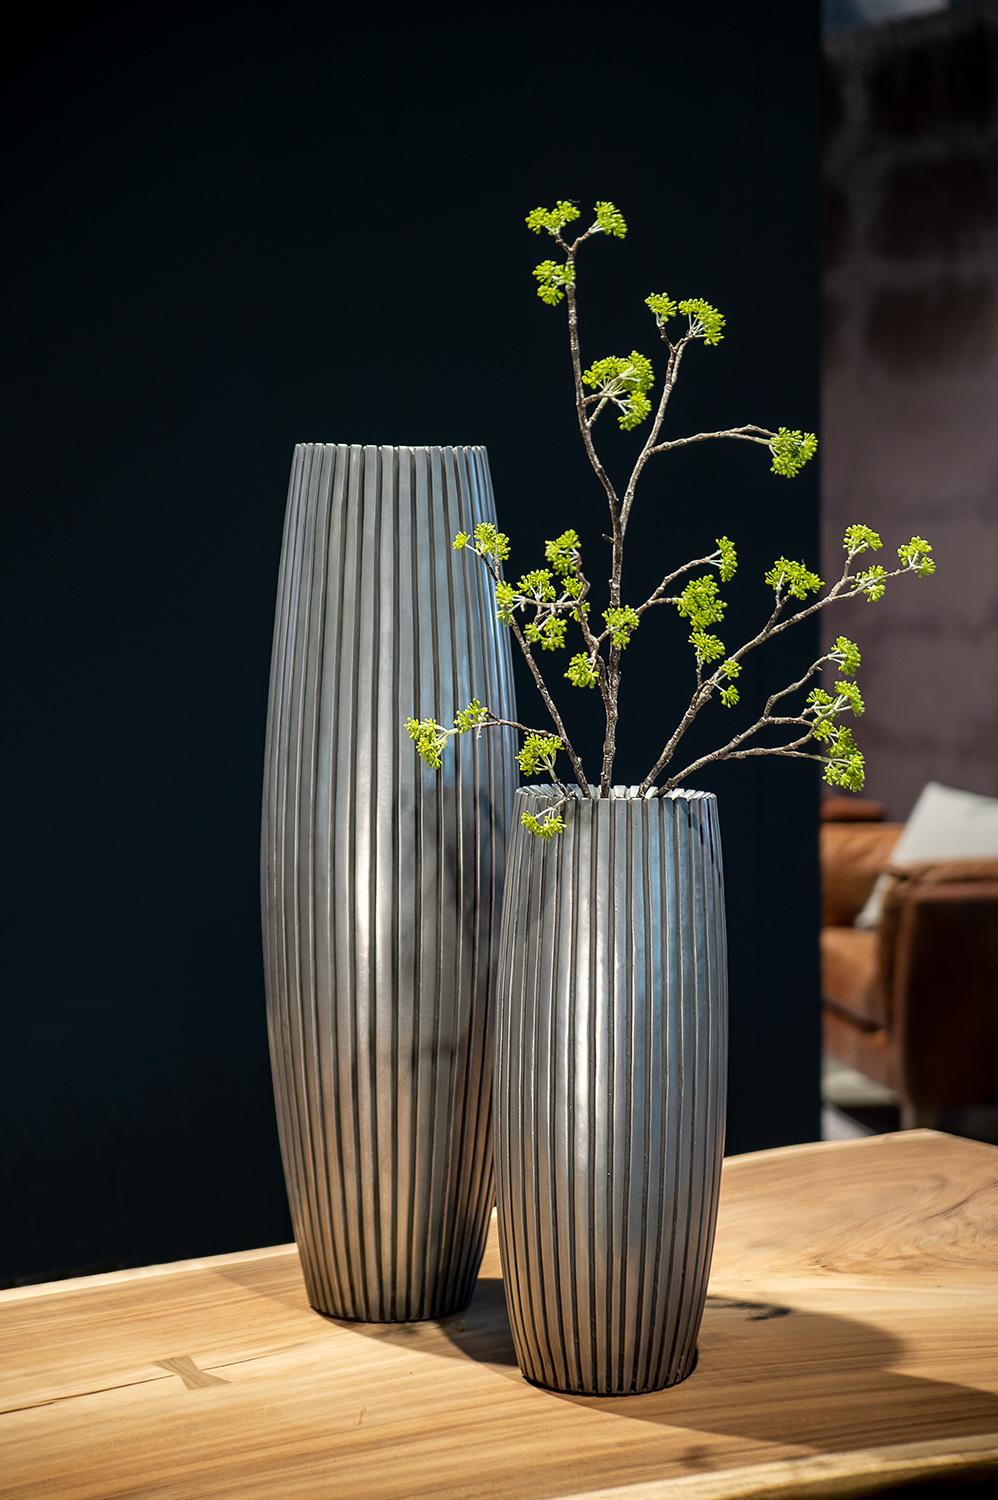 LINES vas, 24/80 cm, aluminium